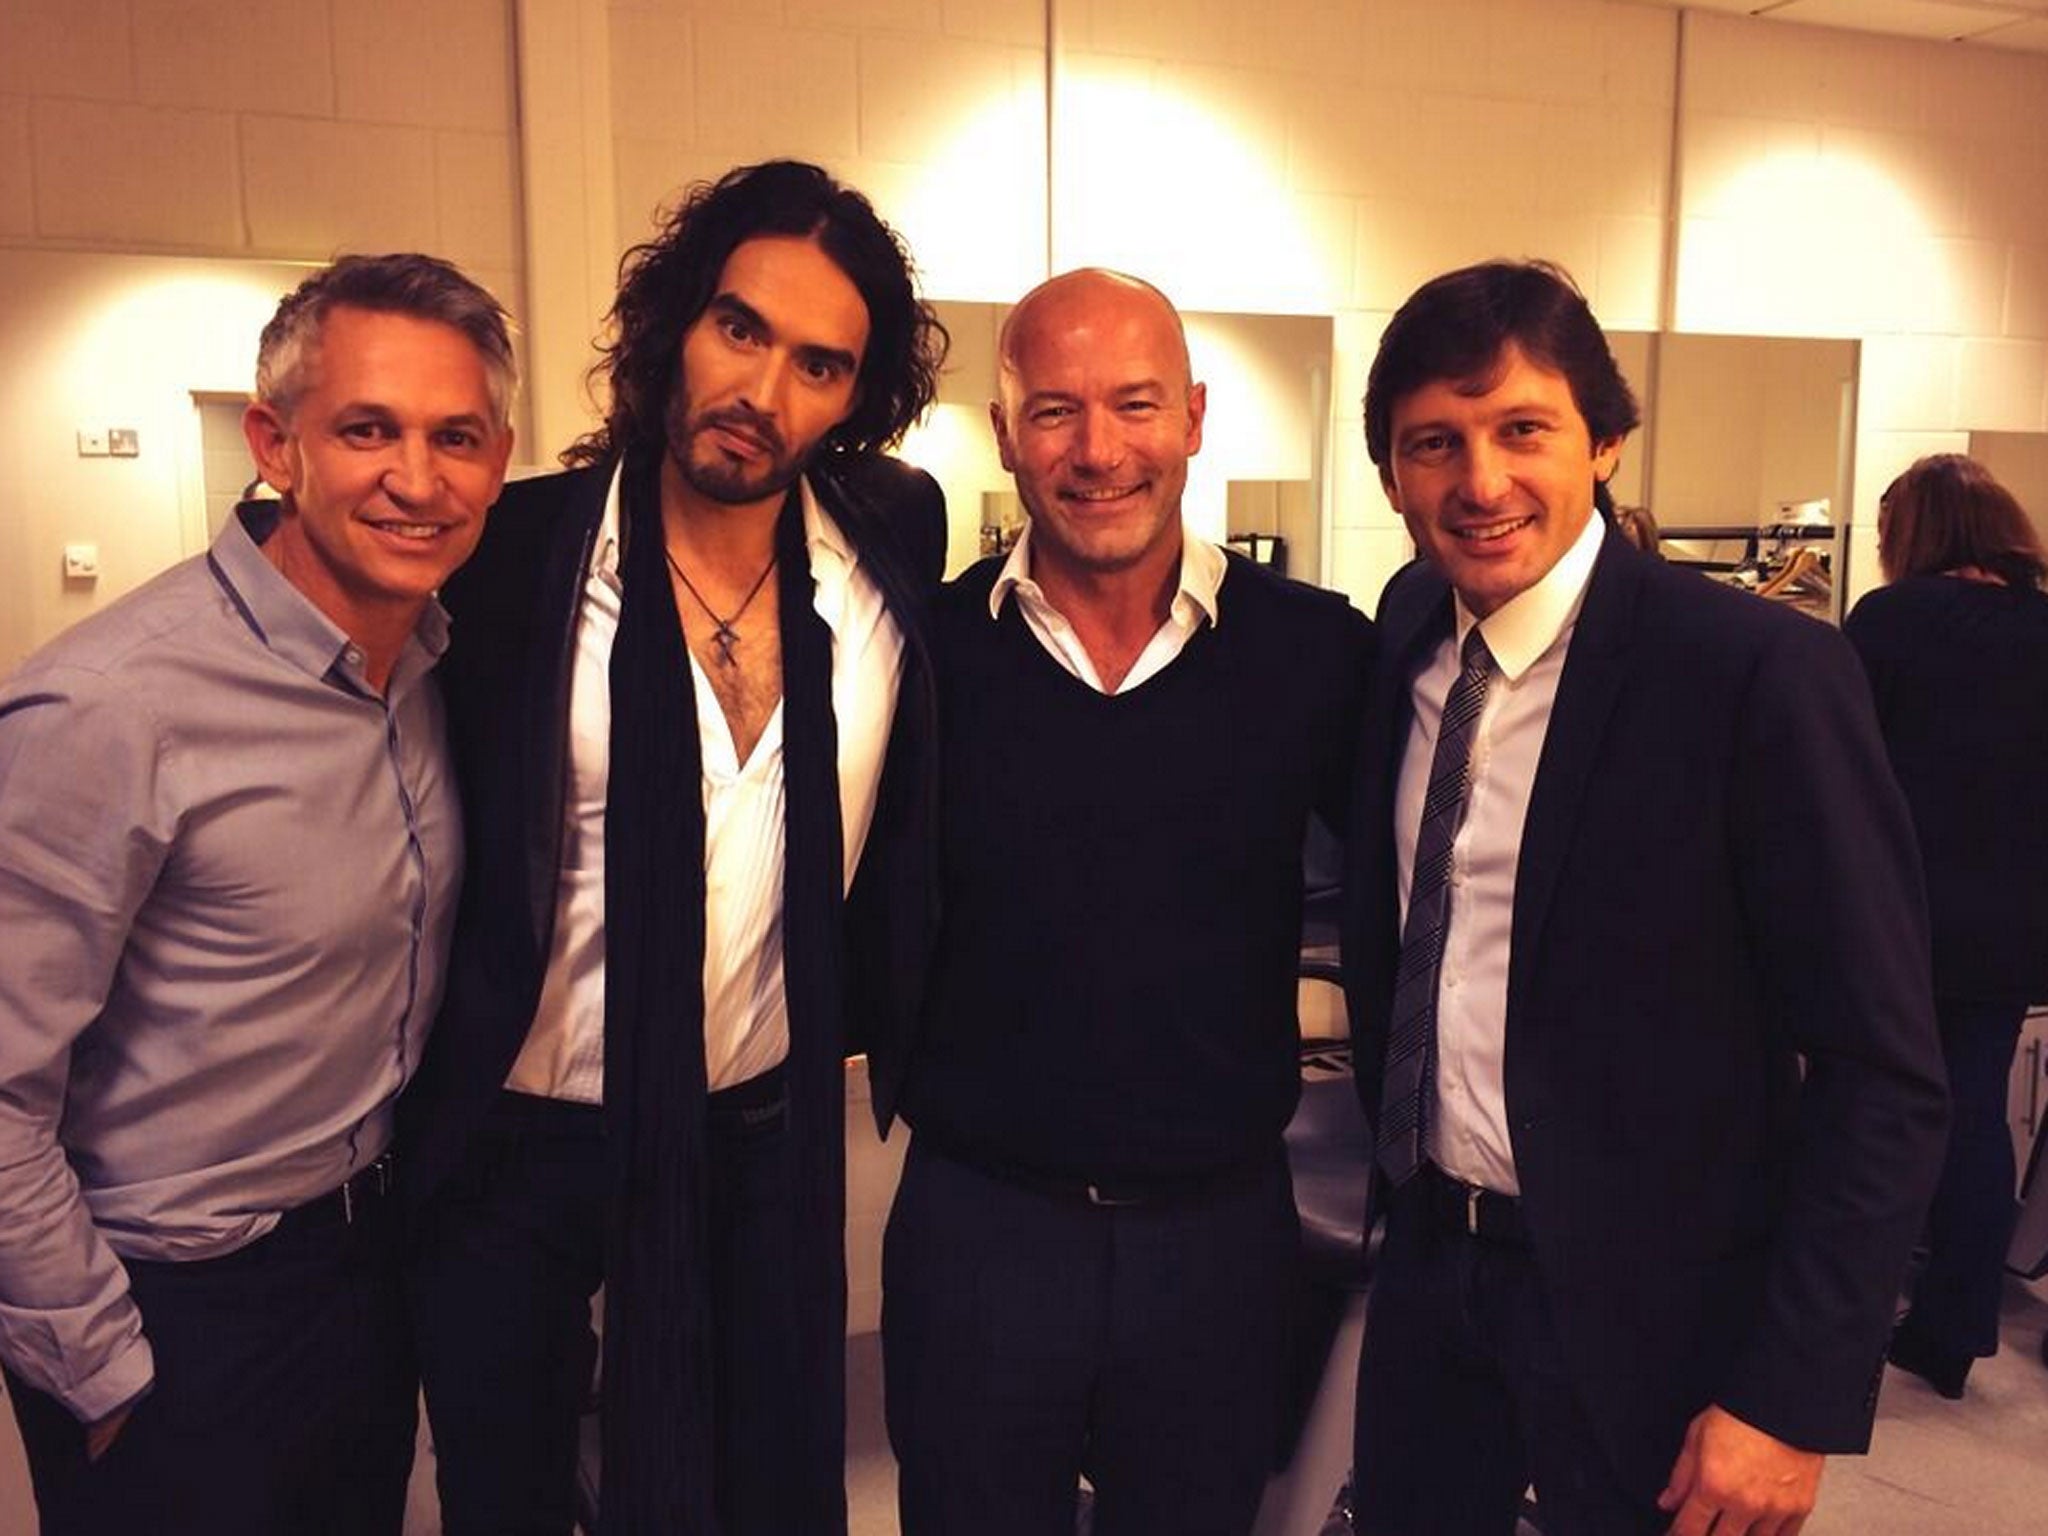 Russell Brand with MOTD regulars Gary Lineker and Alan Shearer, and Brazilian footballer Leonardo